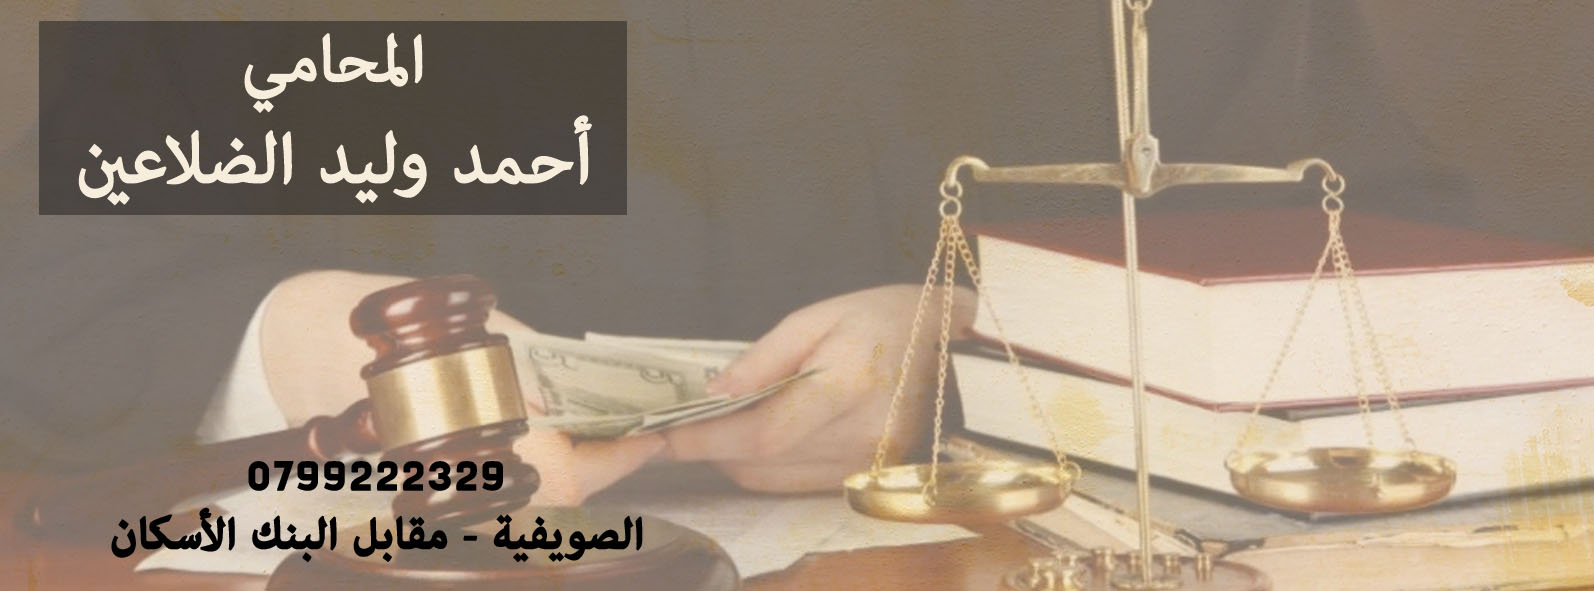 المحامي أحمد وليد الضلاعين1